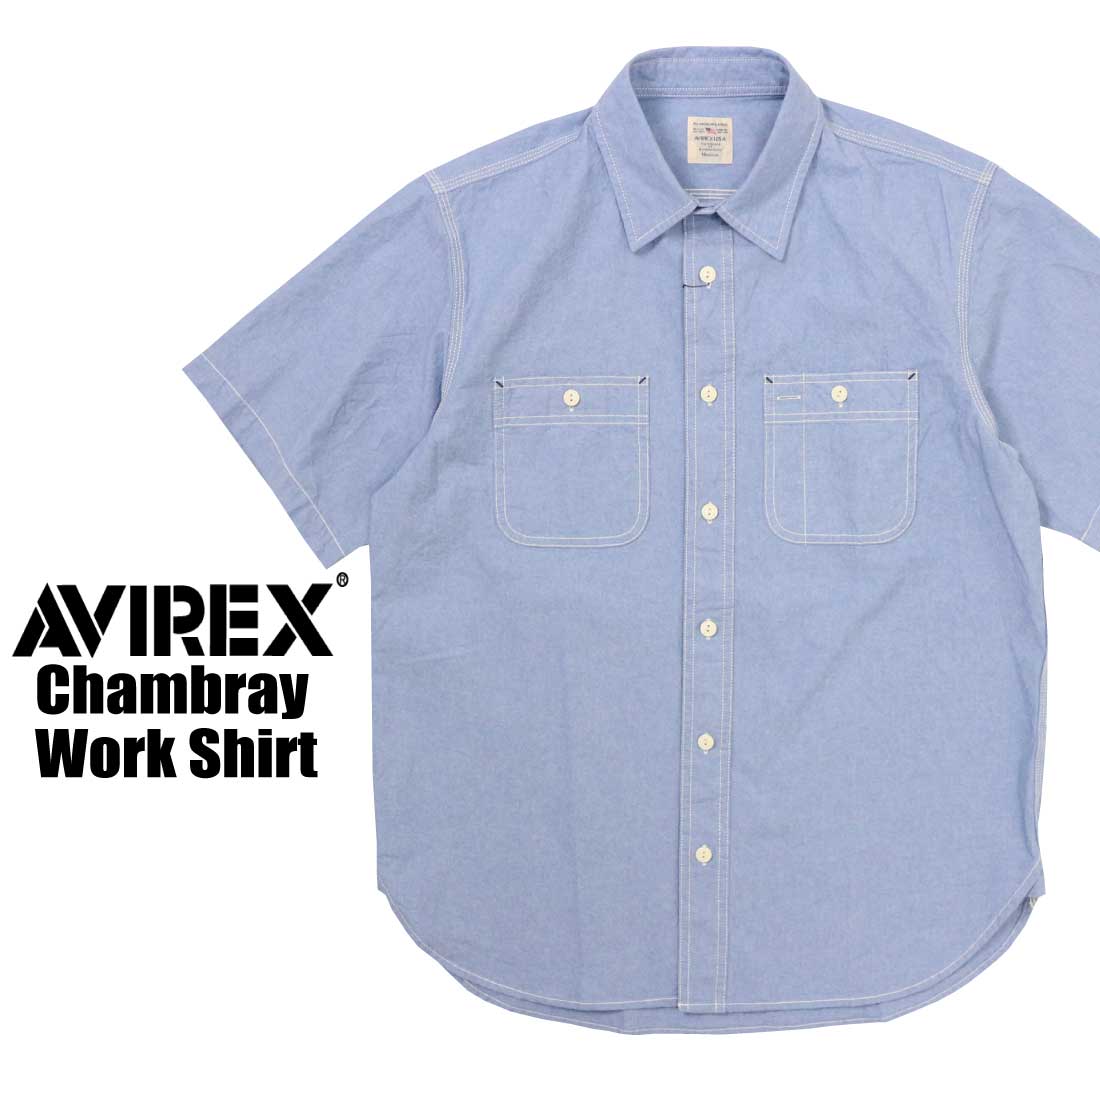 AVIREX 半袖 783-3923003 シャンブレー ワークシャツ 胸ポケット ペンホルダー メ...